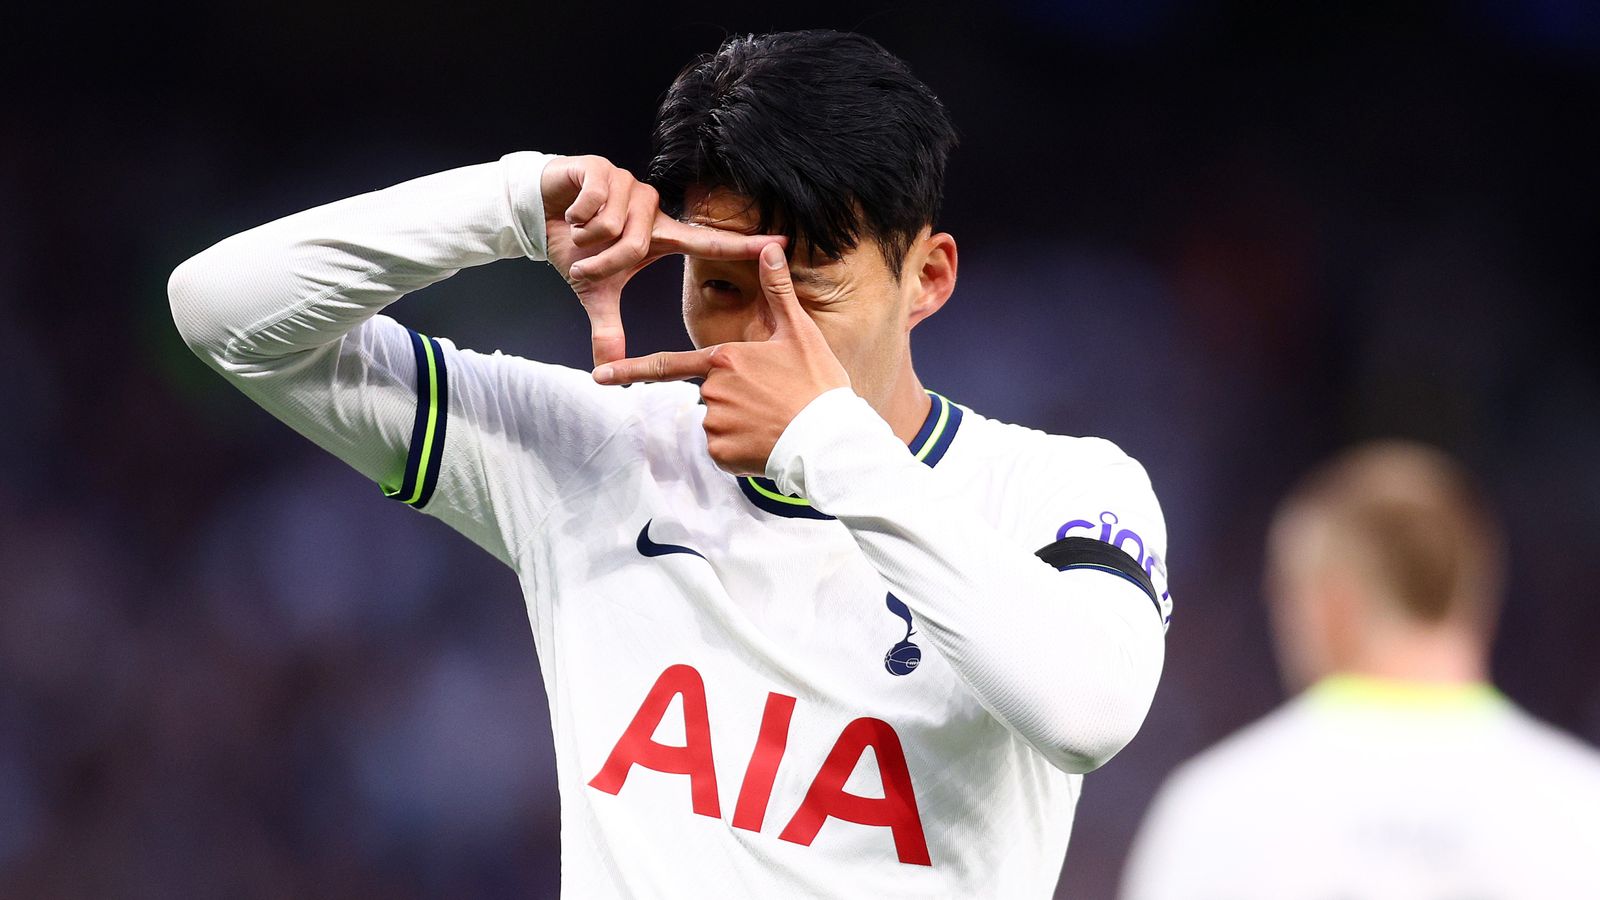 Spurs captain Son Heung-min scores hat trick